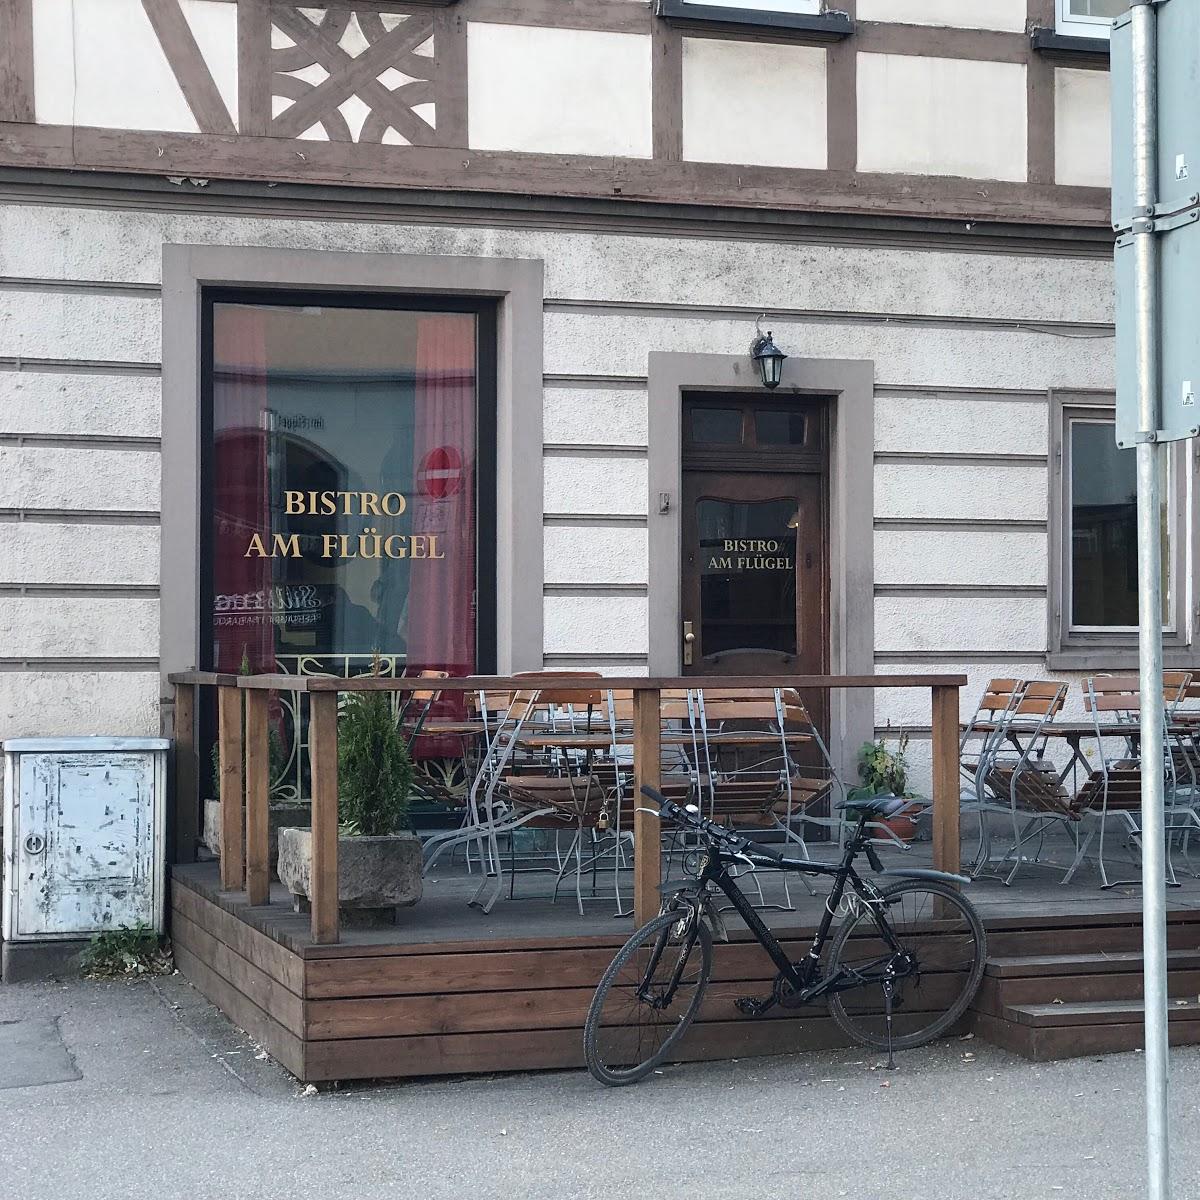 Restaurant "Bistro Am Flügel" in Heidenheim an der Brenz